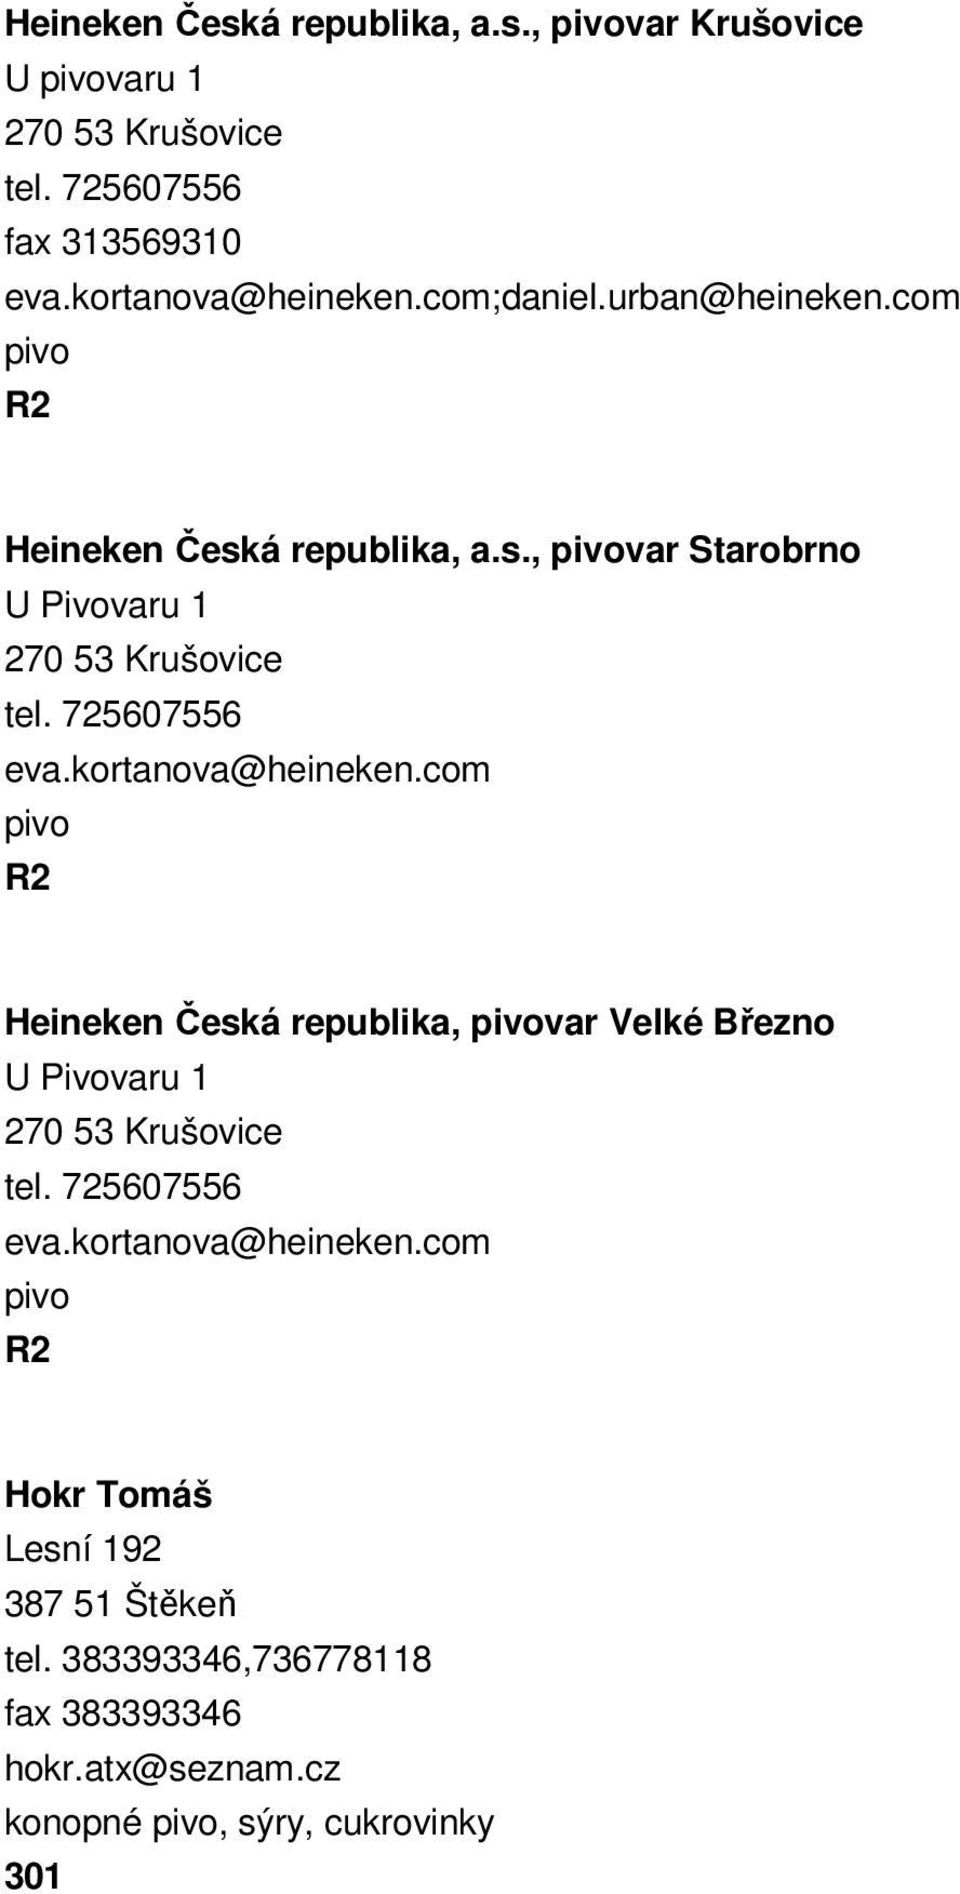 kortanova@heineken.com Heineken Česká republika, var Velké Březno U Pivovaru 1 270 53 Krušovice tel. 725607556 eva.